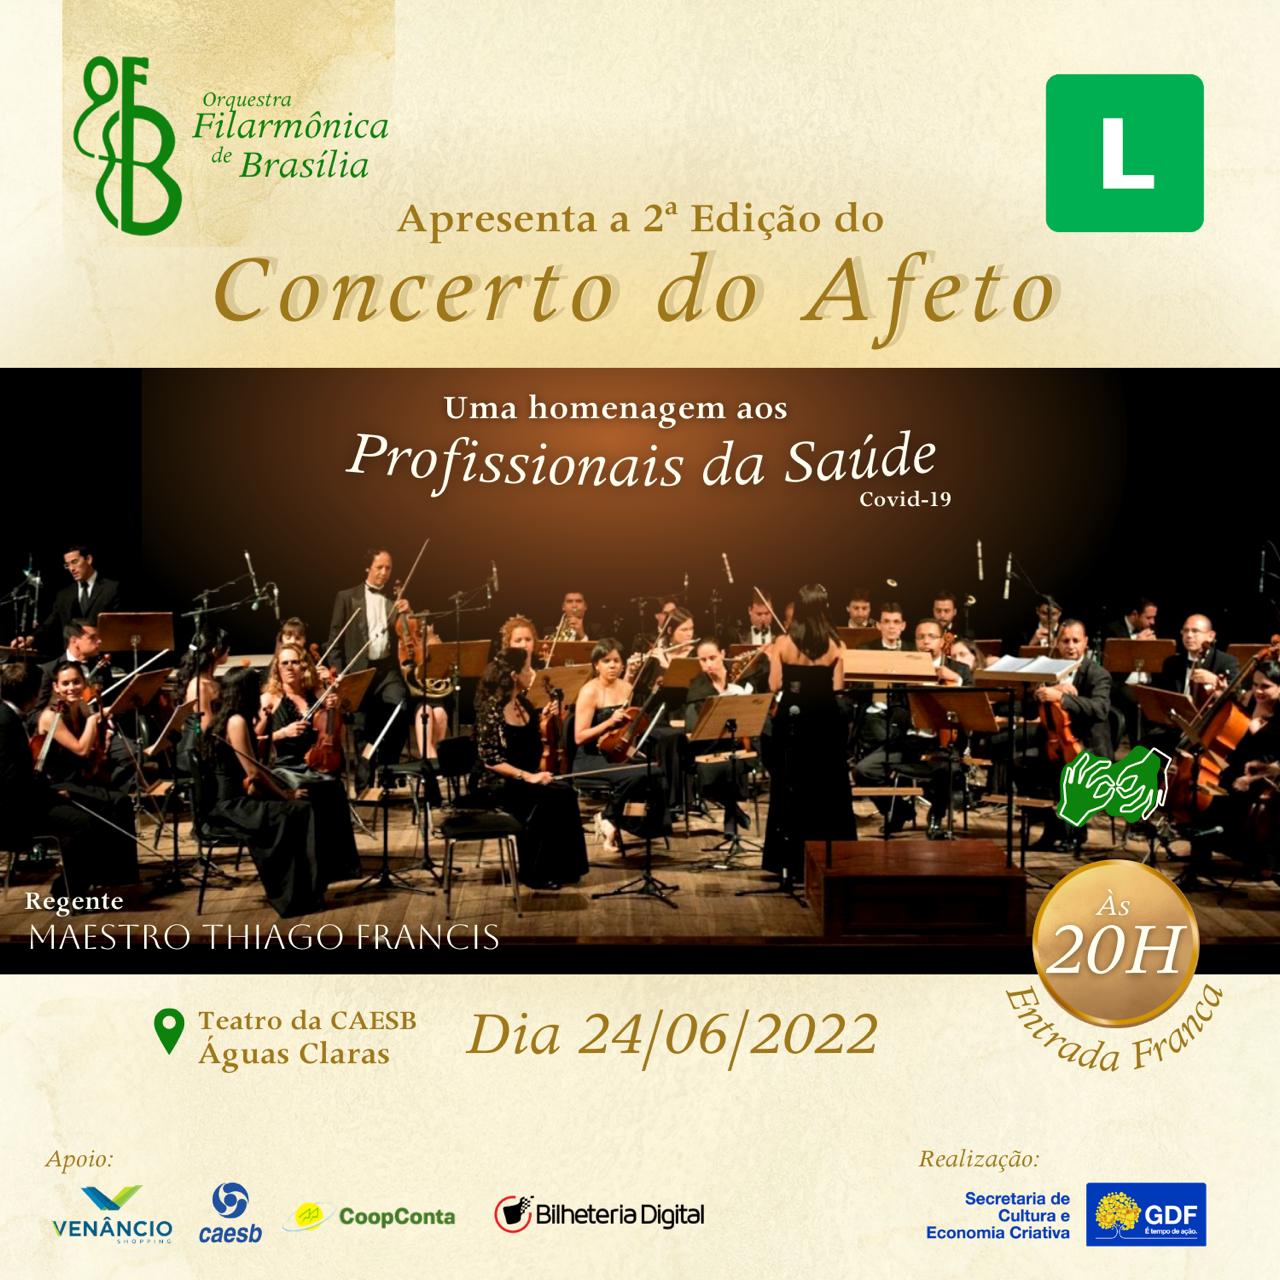 Economia criativa: Orquestra Filarmônica de Brasília apresenta o “Concerto do Afeto”, uma homenagem aos profissionais de saúde